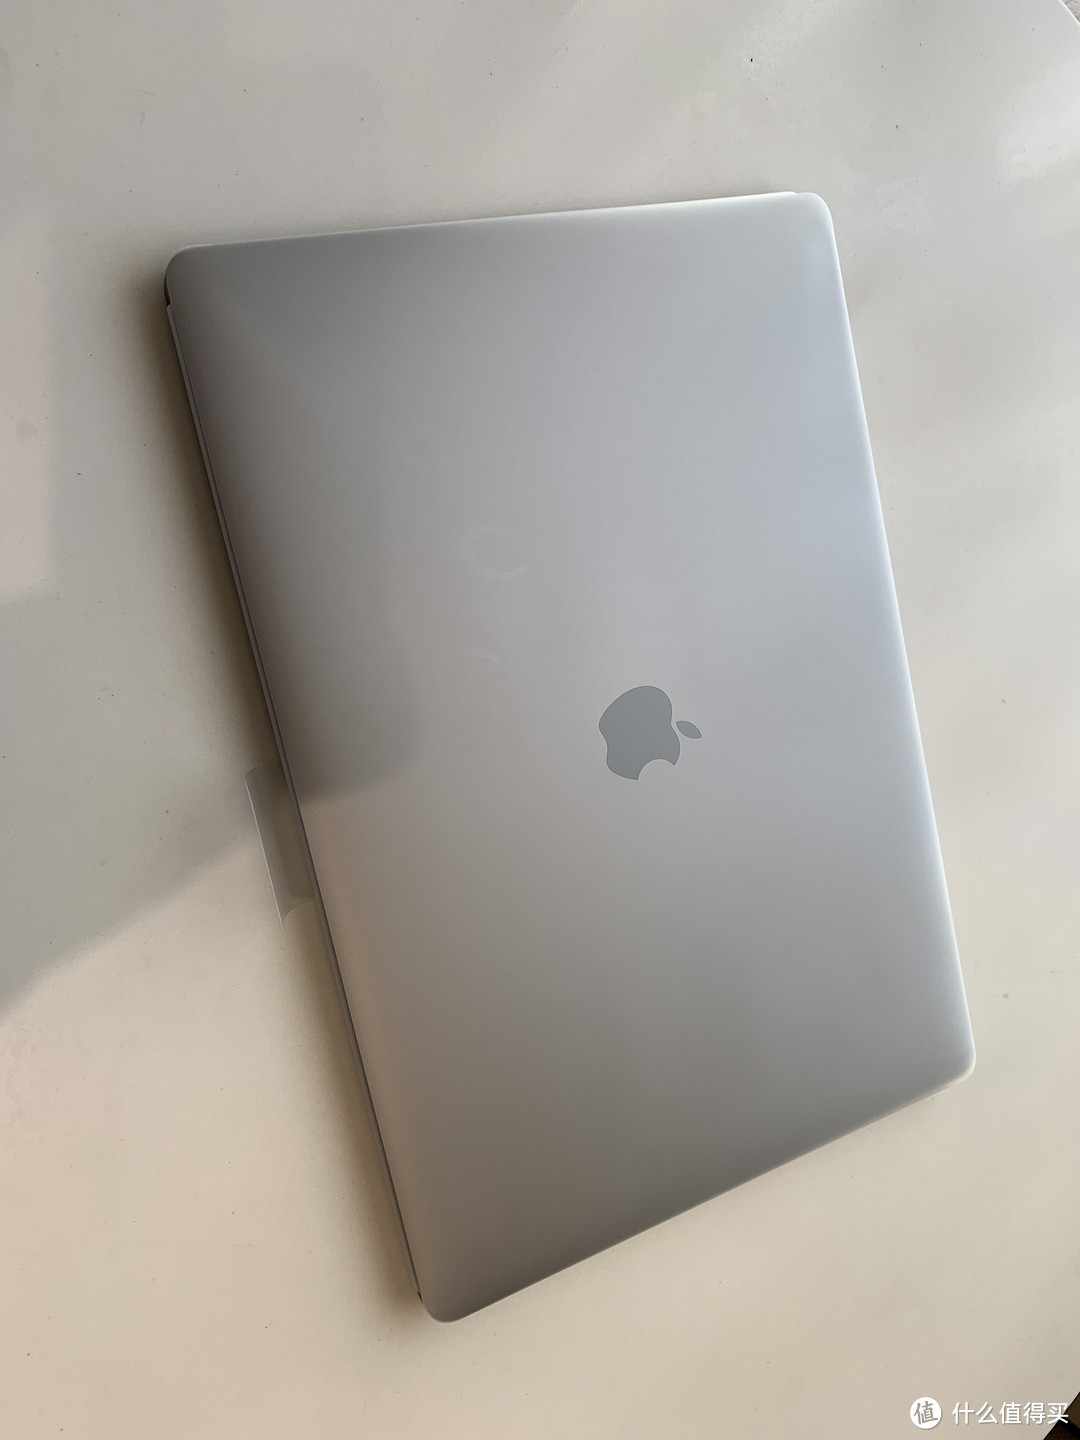 MACOS初体验，MacbookPro2018开箱